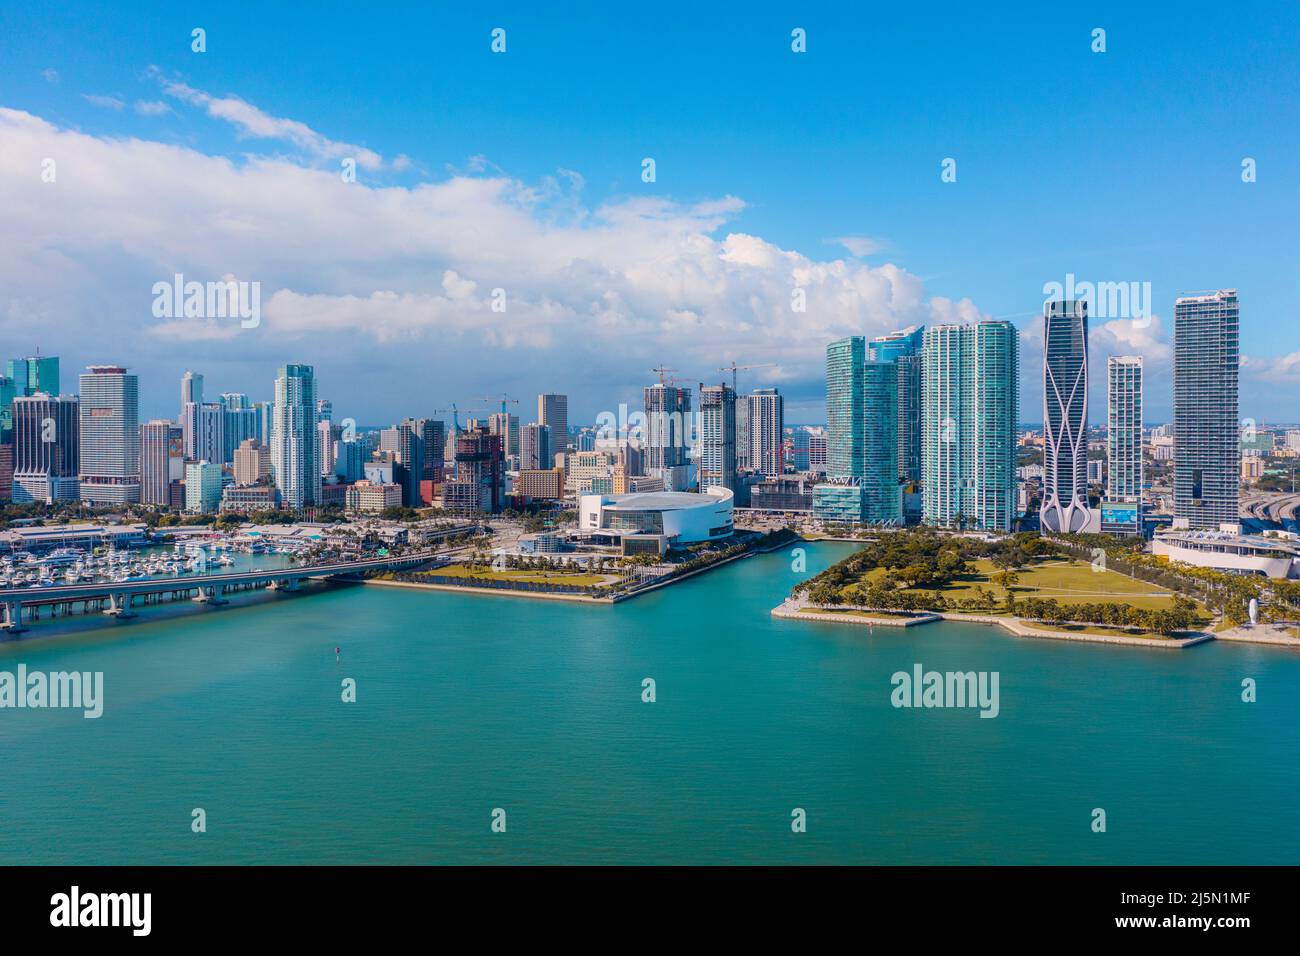 Vue panoramique sur le centre-ville de Miami, dans le sud de la Floride Banque D'Images